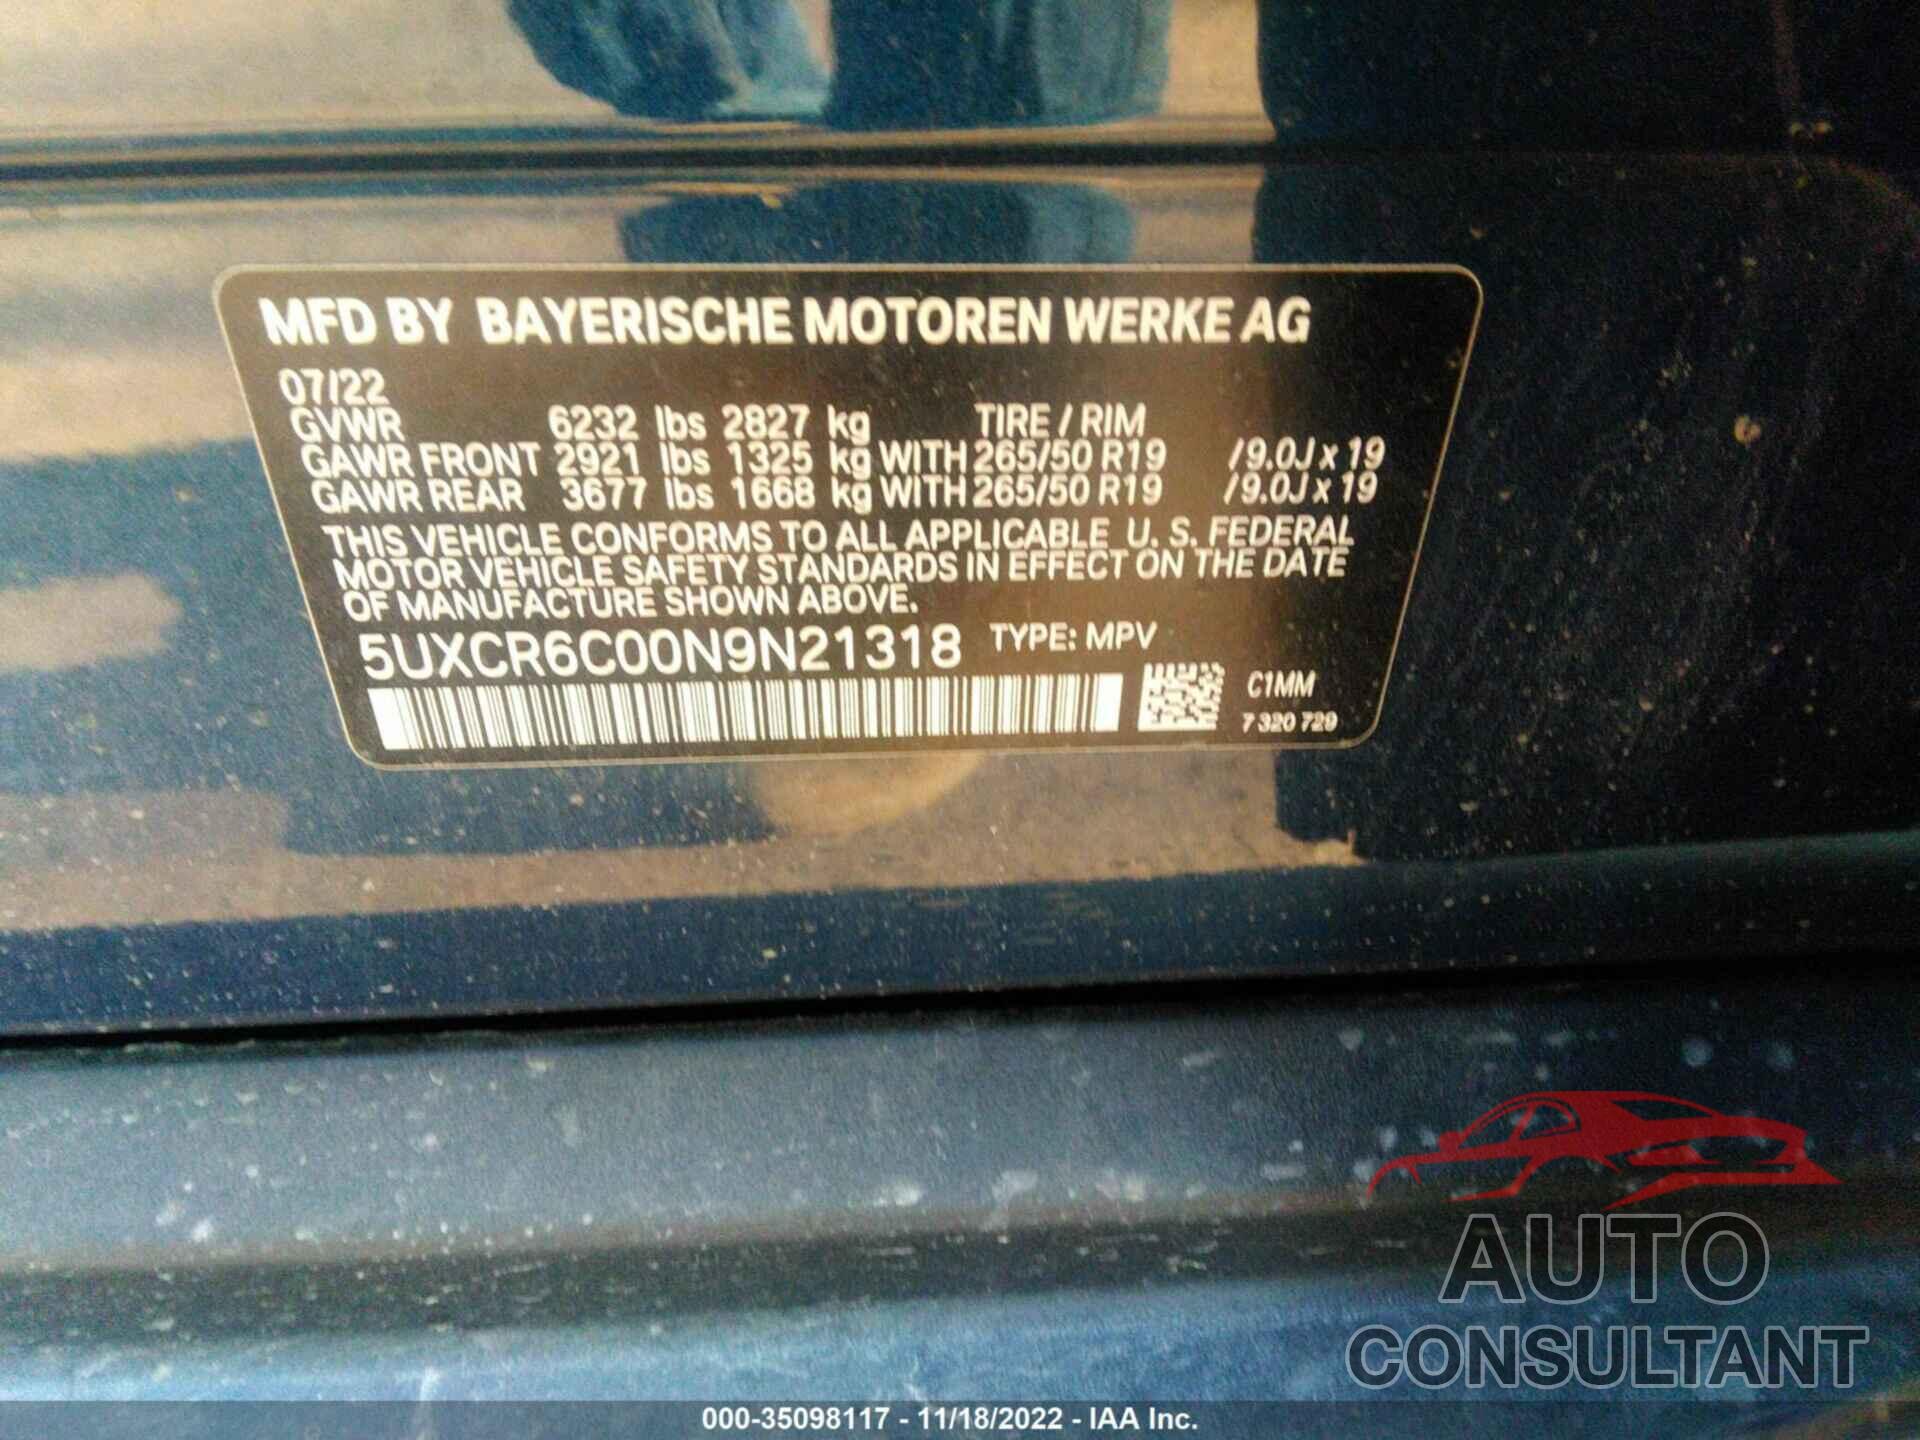 BMW X5 2022 - 5UXCR6C00N9N21318